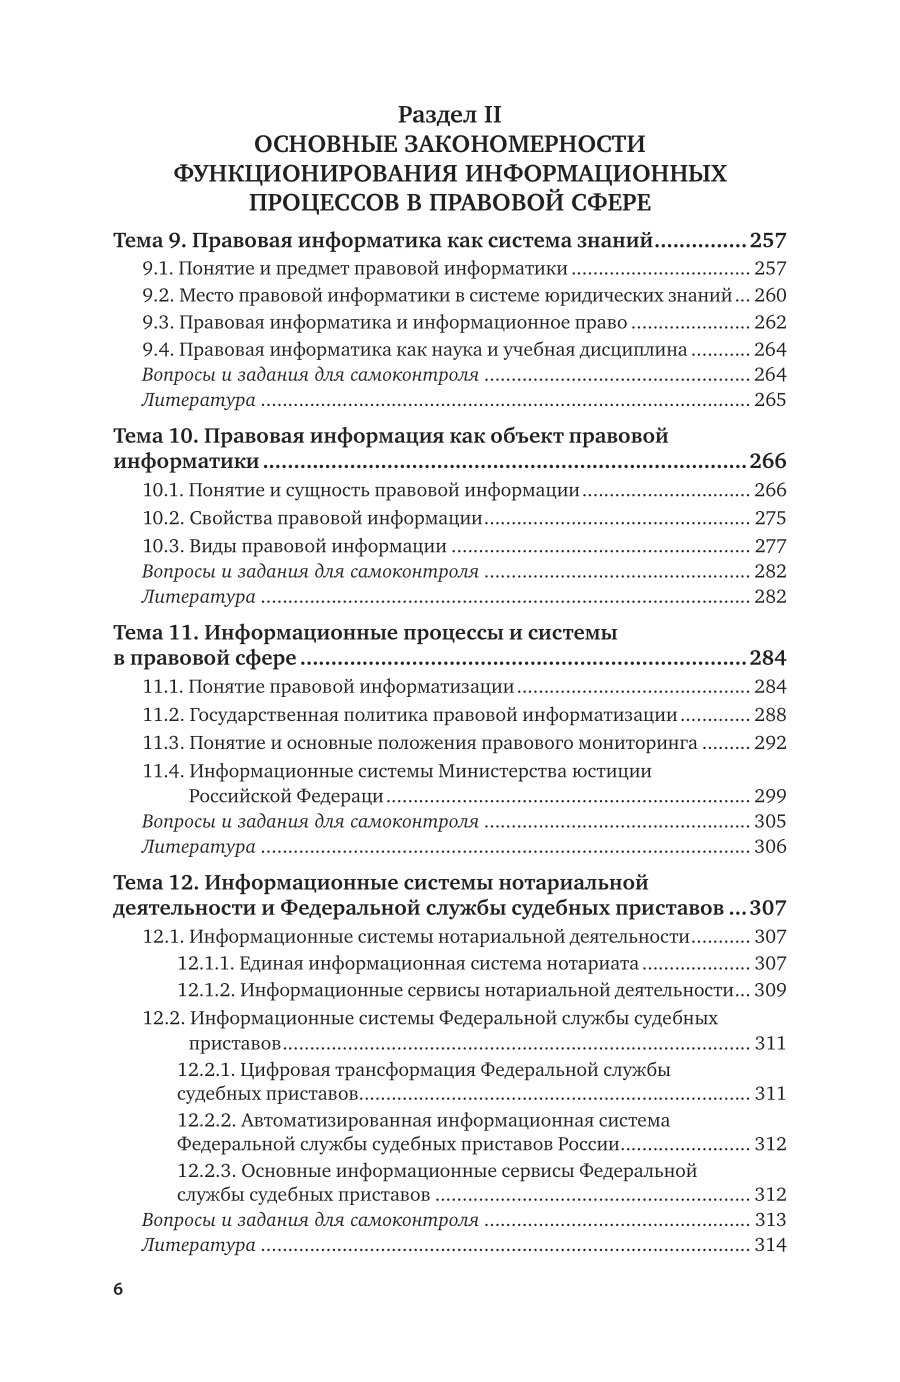 Информационные технологии в юридической деятельности 4-е изд., пер. и доп. Учебник для вузов - фото №7